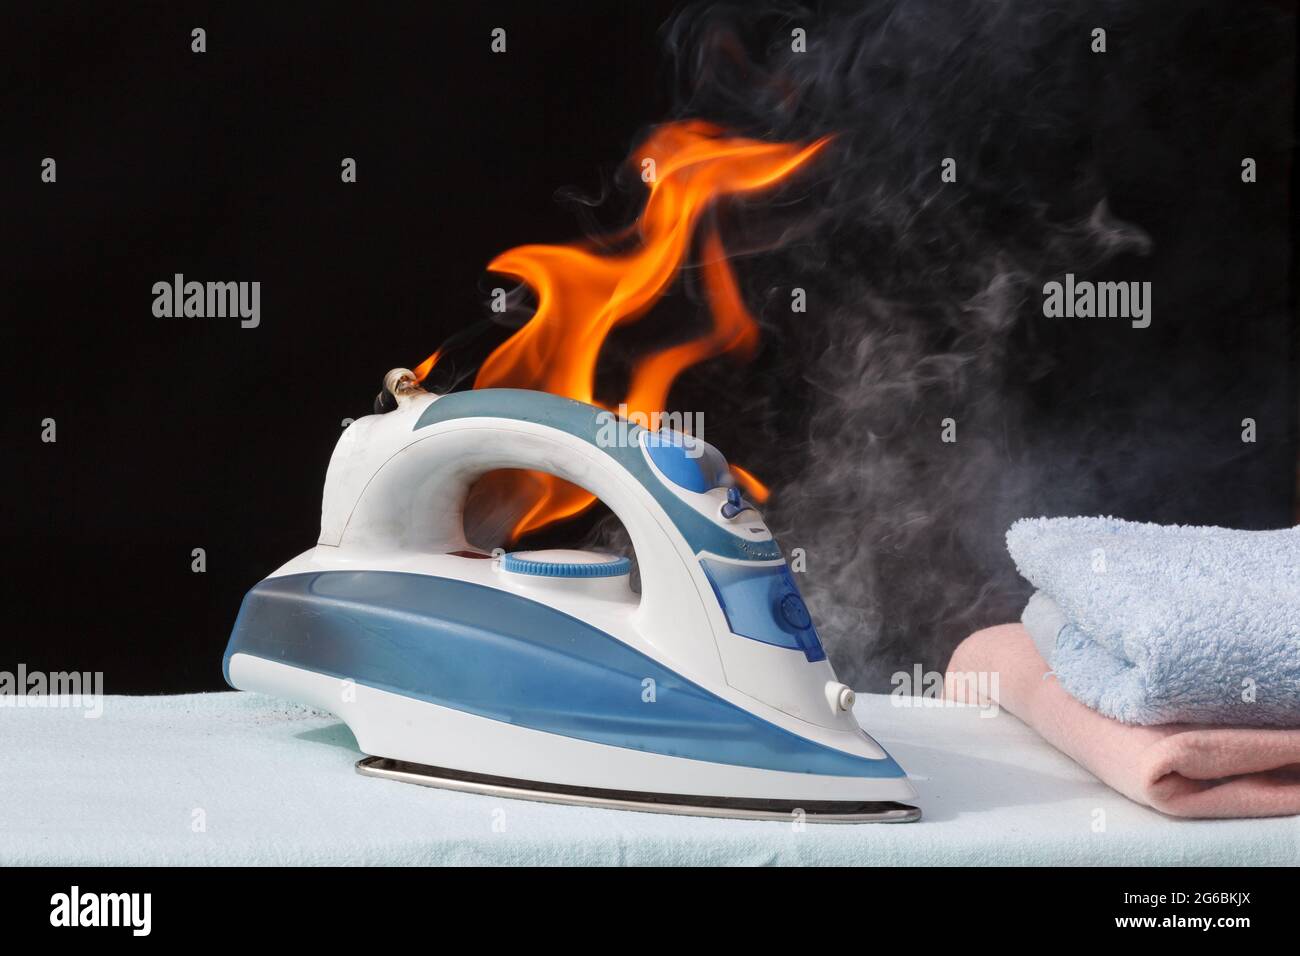 Bügeleisen auf dem Bügelbrett in Flammen Feuer Brandursache Stockfotografie  - Alamy